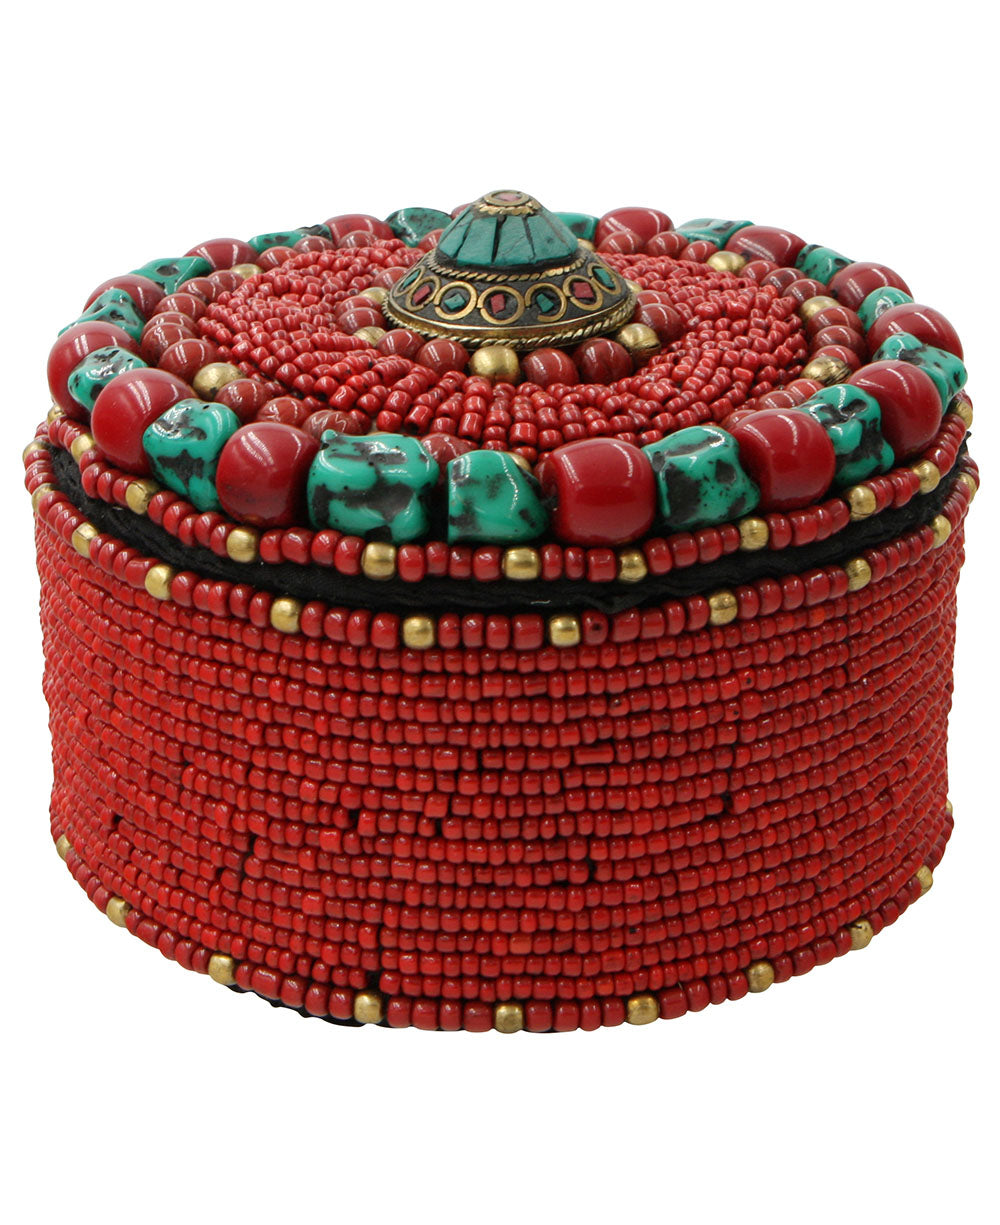 Tibetan Jewelry Box